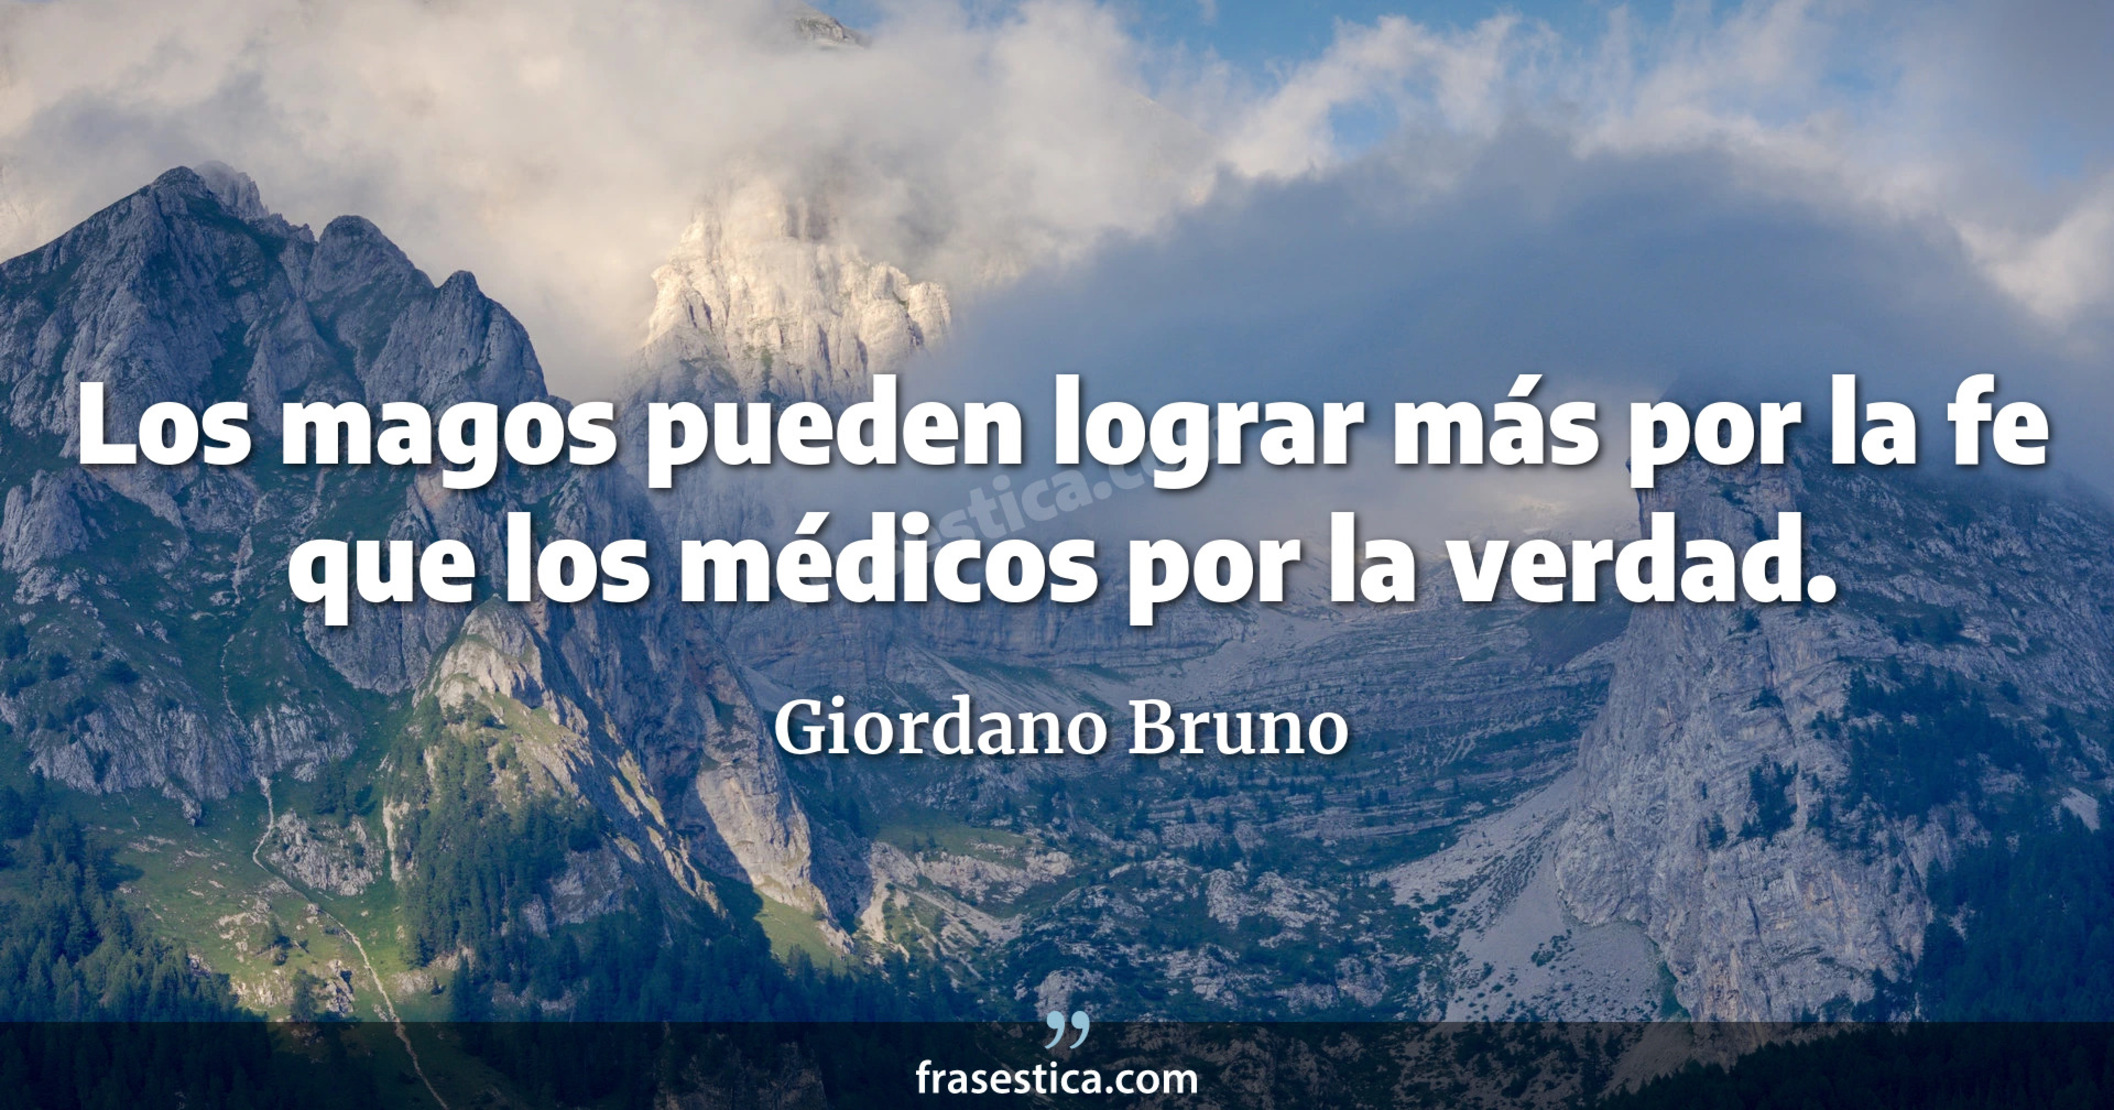 Los magos pueden lograr más por la fe que los médicos por la verdad. - Giordano Bruno